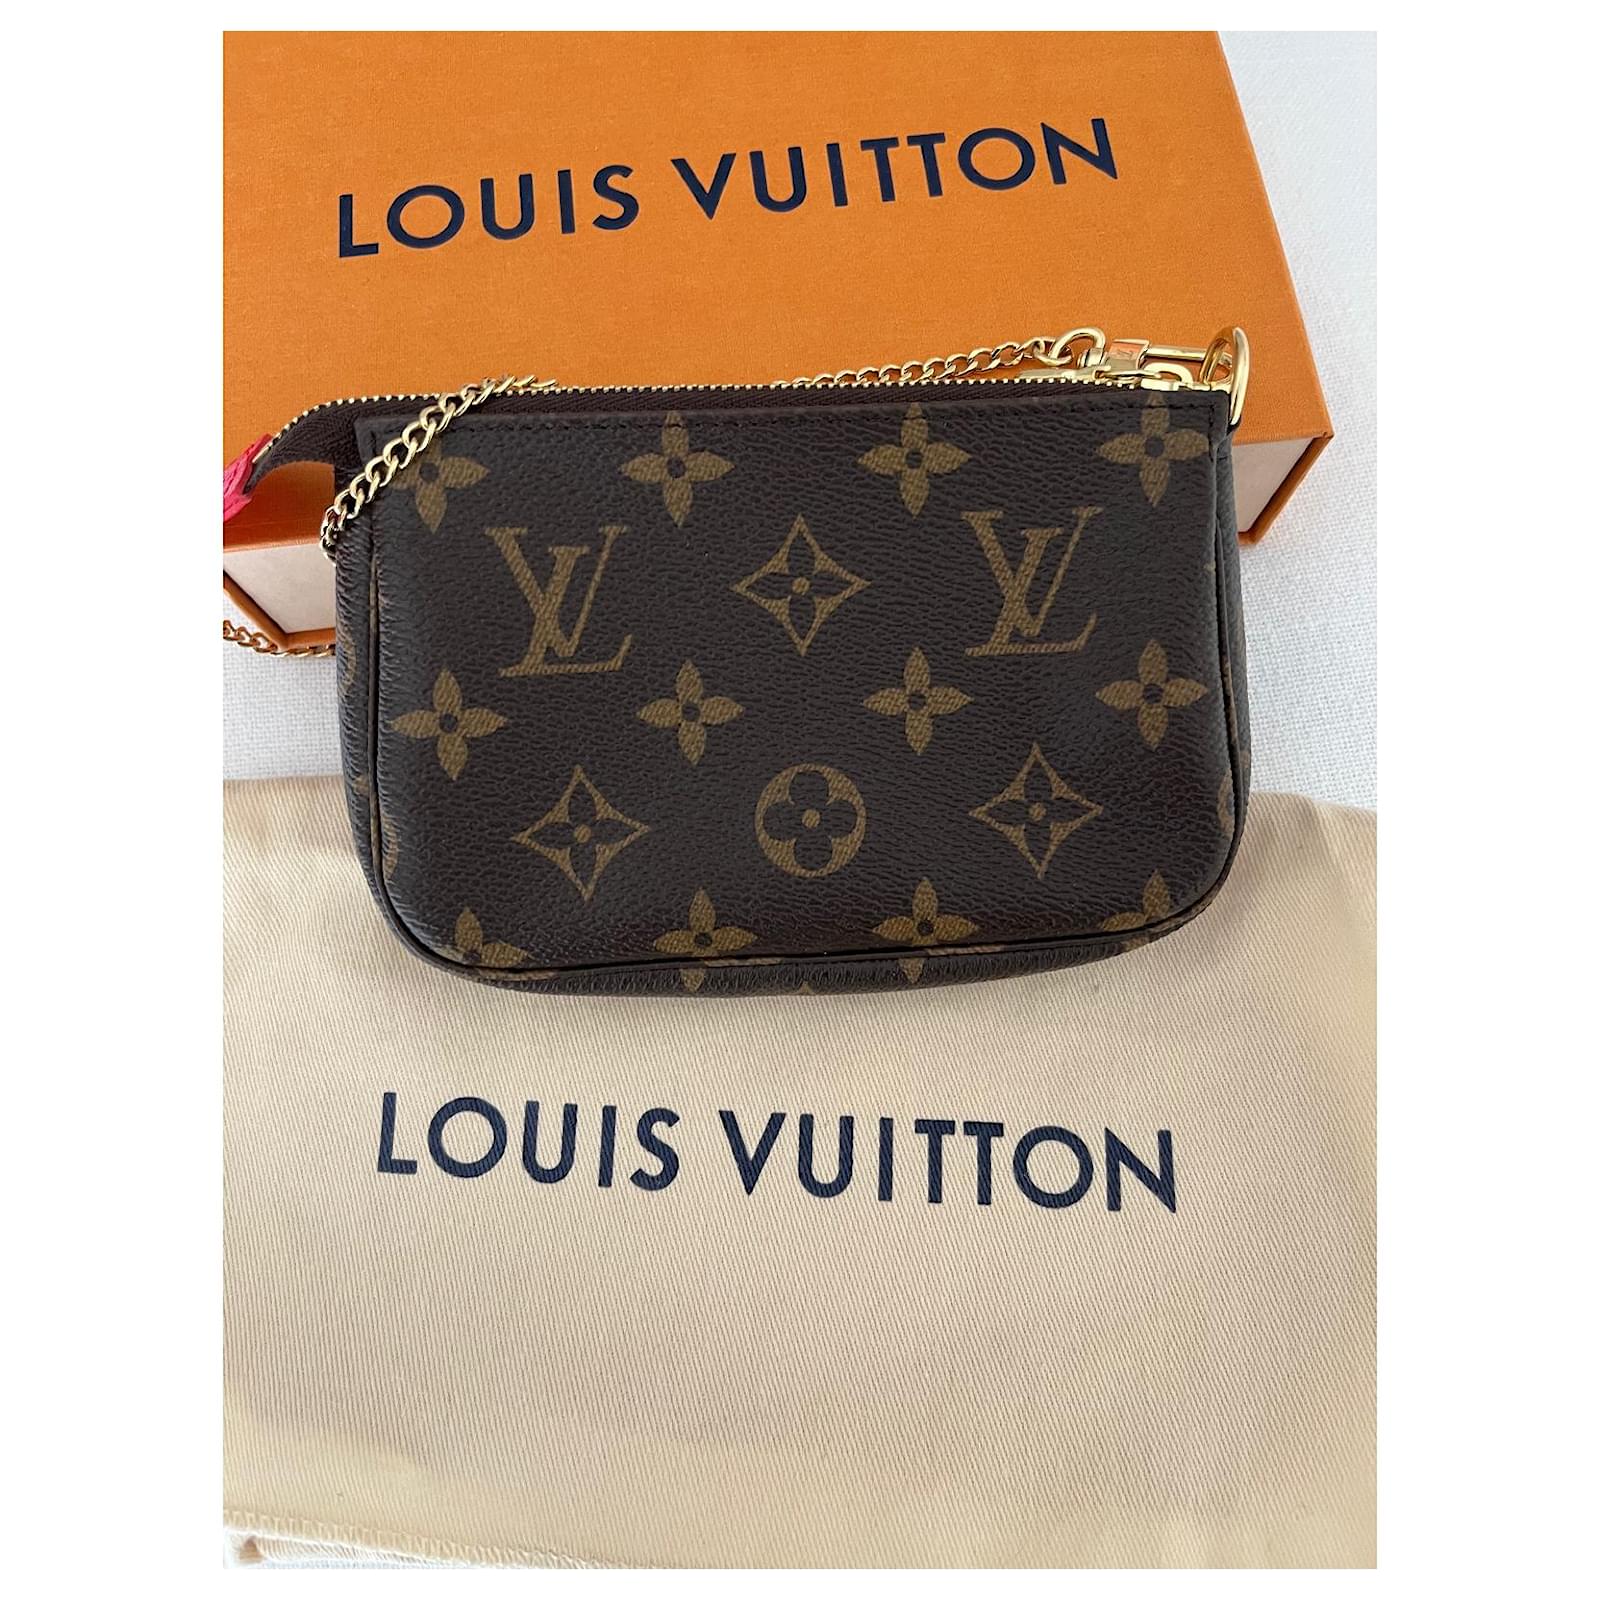 Purses, Wallets, Cases Louis Vuitton Mini Pochette Accessoires Limited Edition Summer 2017 Capri